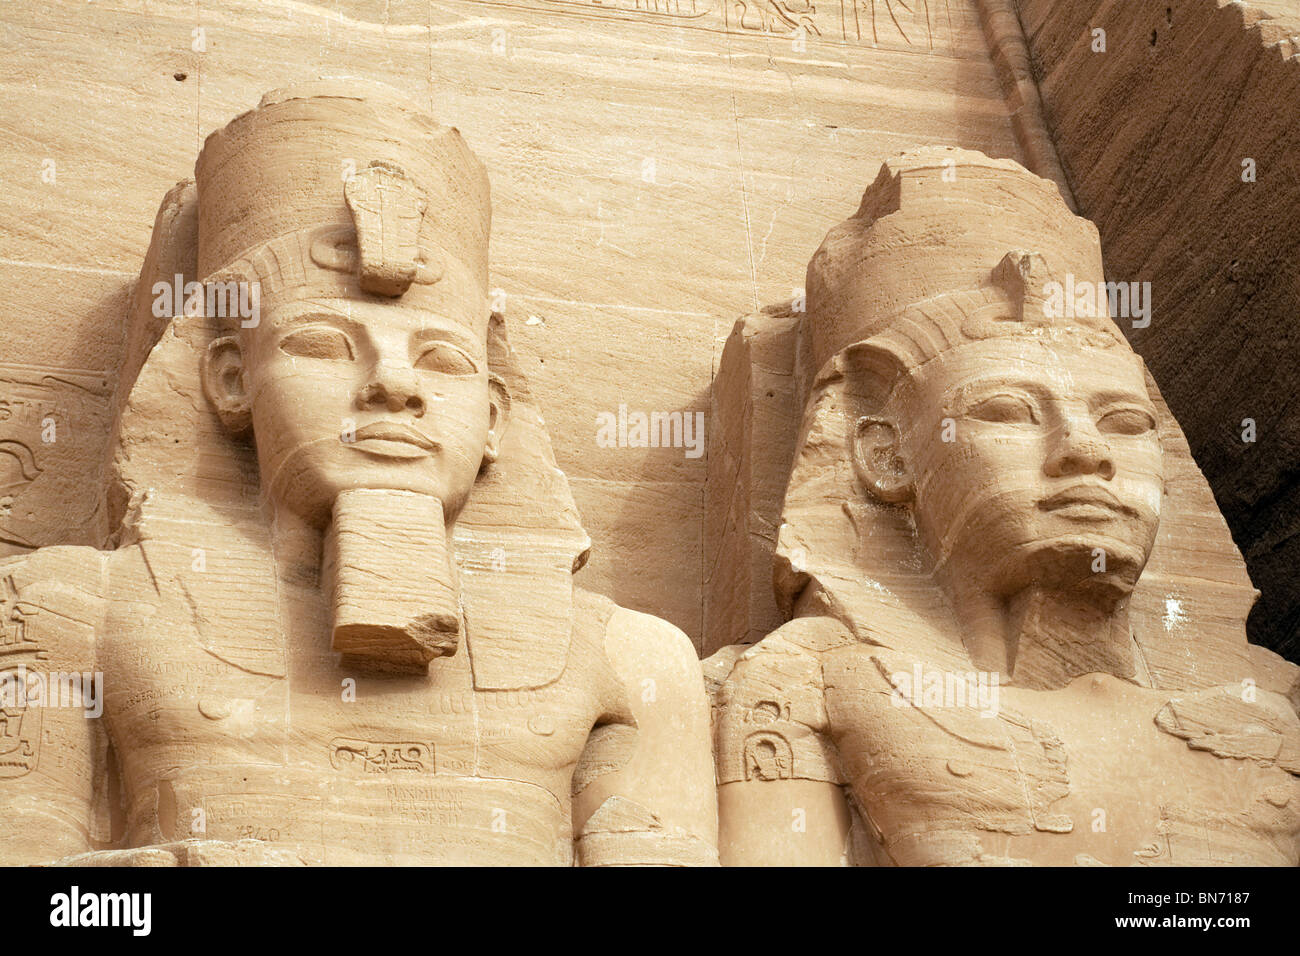 Égypte ancienne; Temple Abu Simbel; près des têtes de deux des statues de Ramses 2 au Grand Temple, Abu Simbel, Haute-Égypte Afrique Banque D'Images